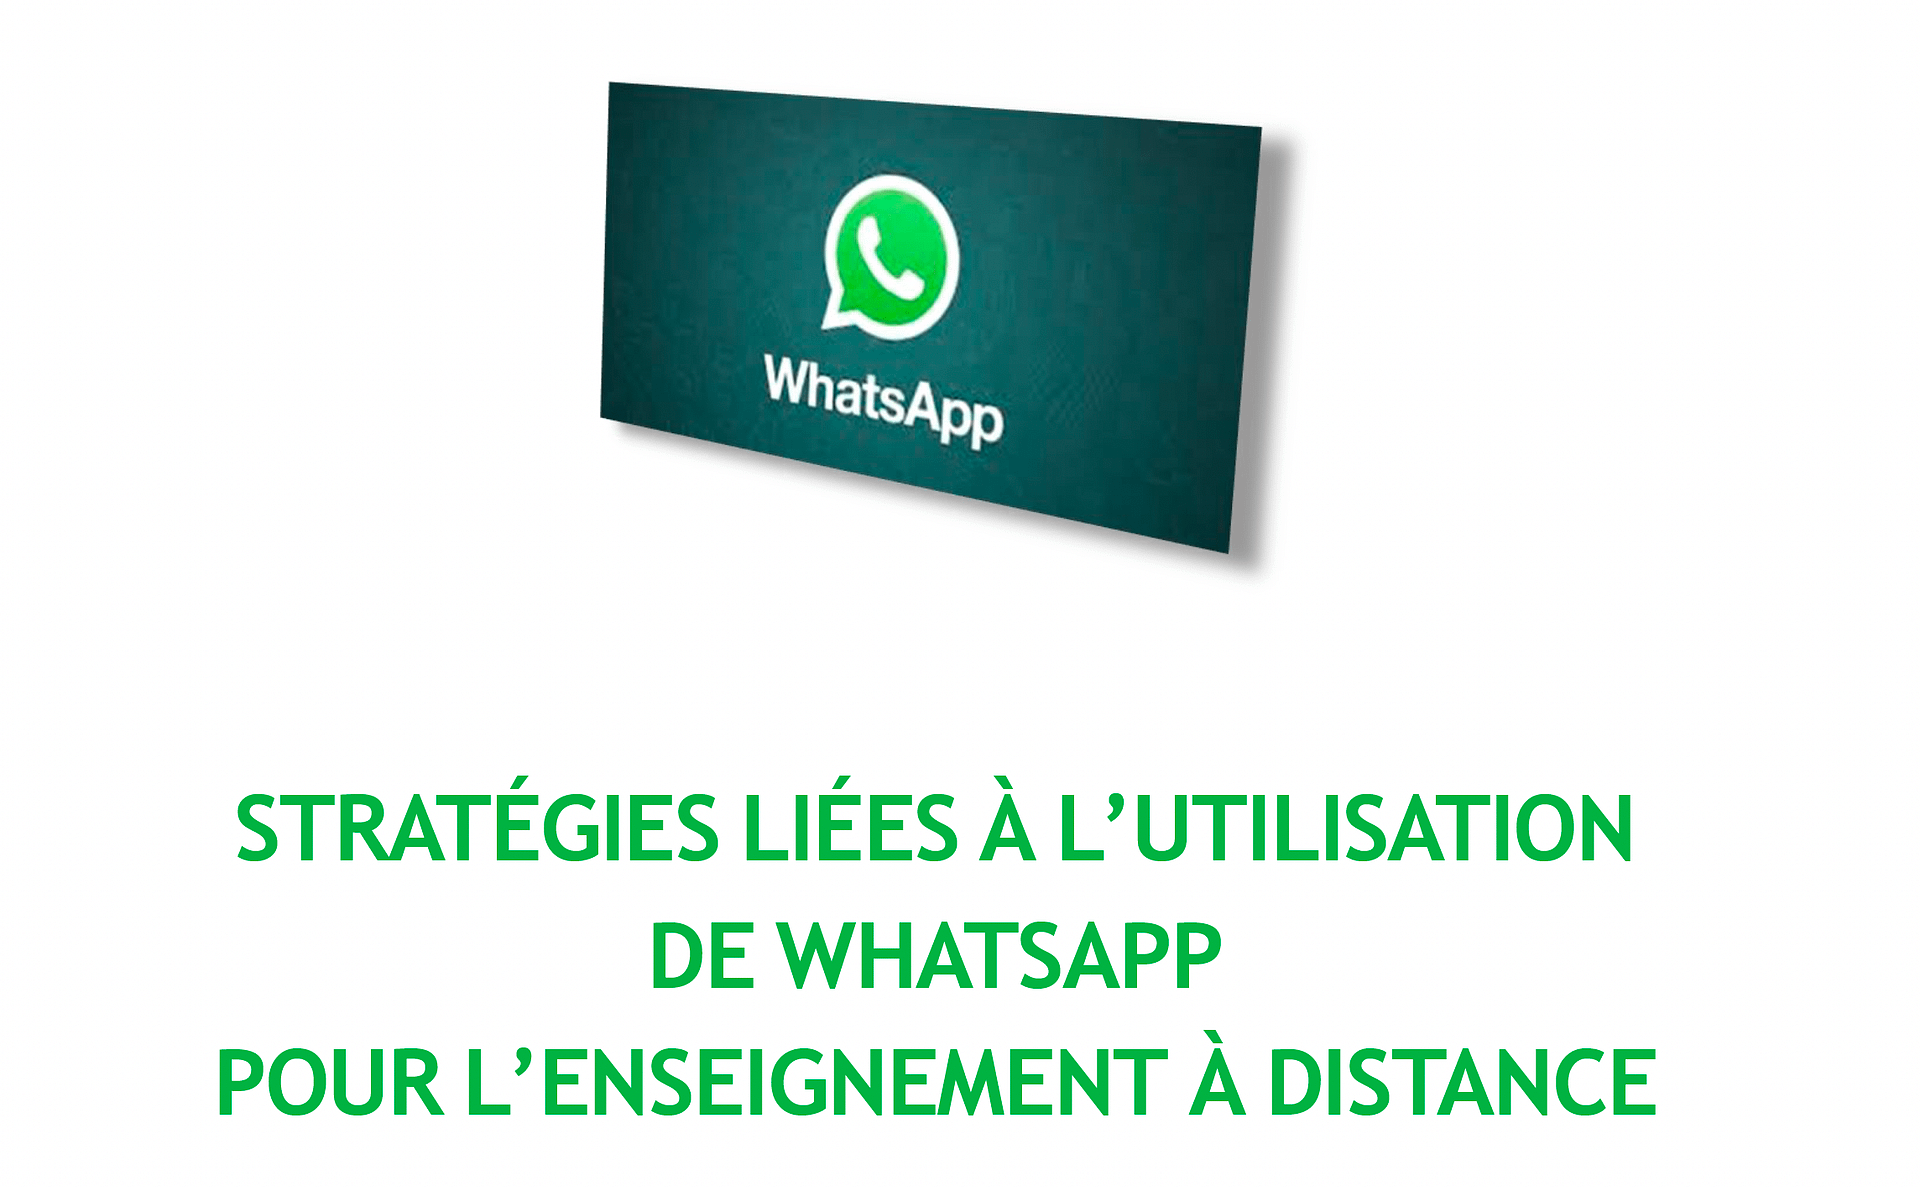 Whatsapp strategies french